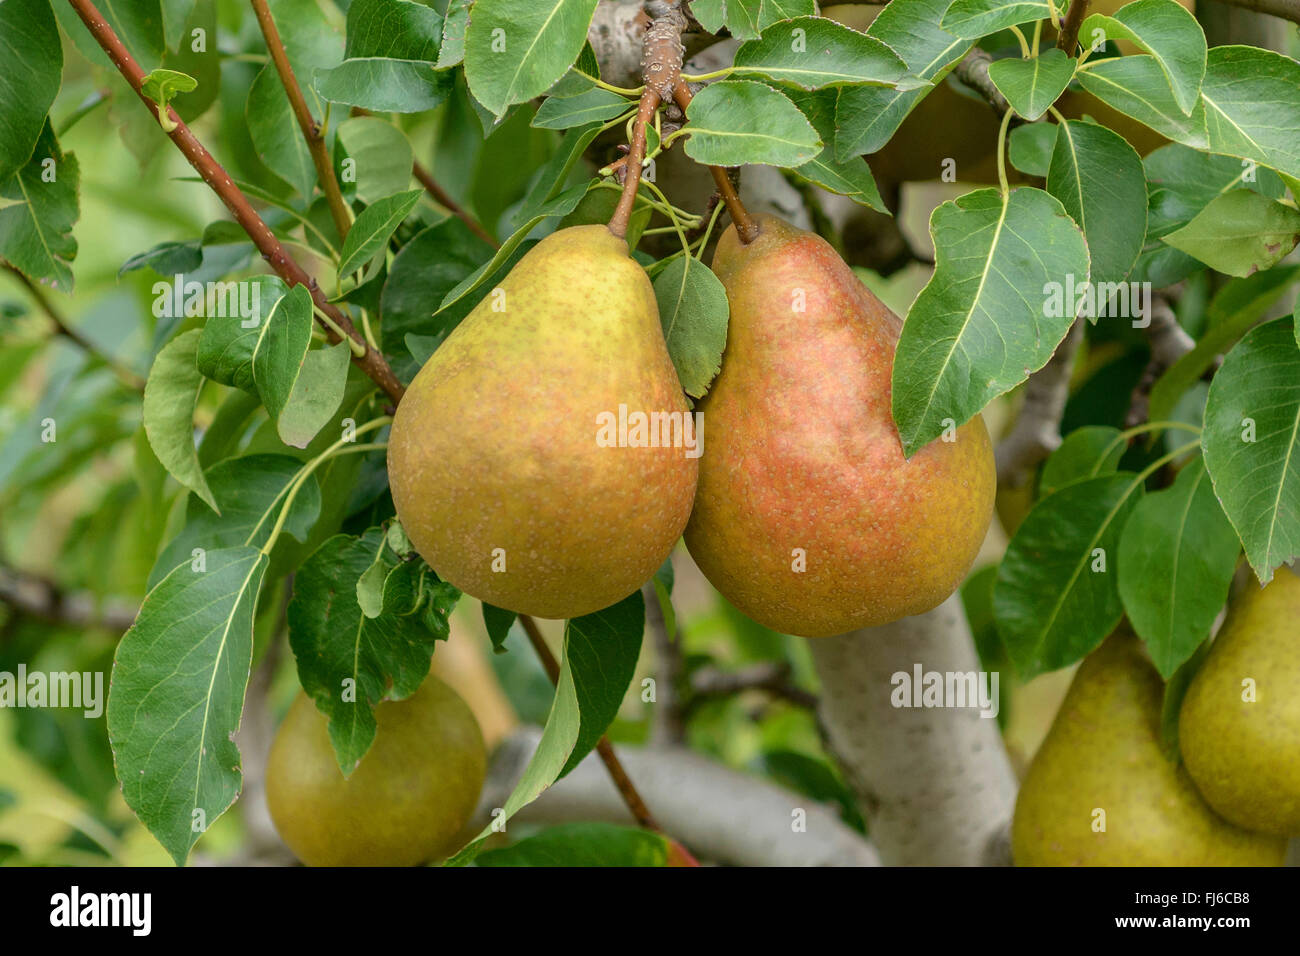 Common pear (Pyrus communis 'Durondeau de Tongre', Pyrus communis Durondeau de Tongre), pears on a tree, cultivar Durondeau de Tongre, Germany Stock Photo